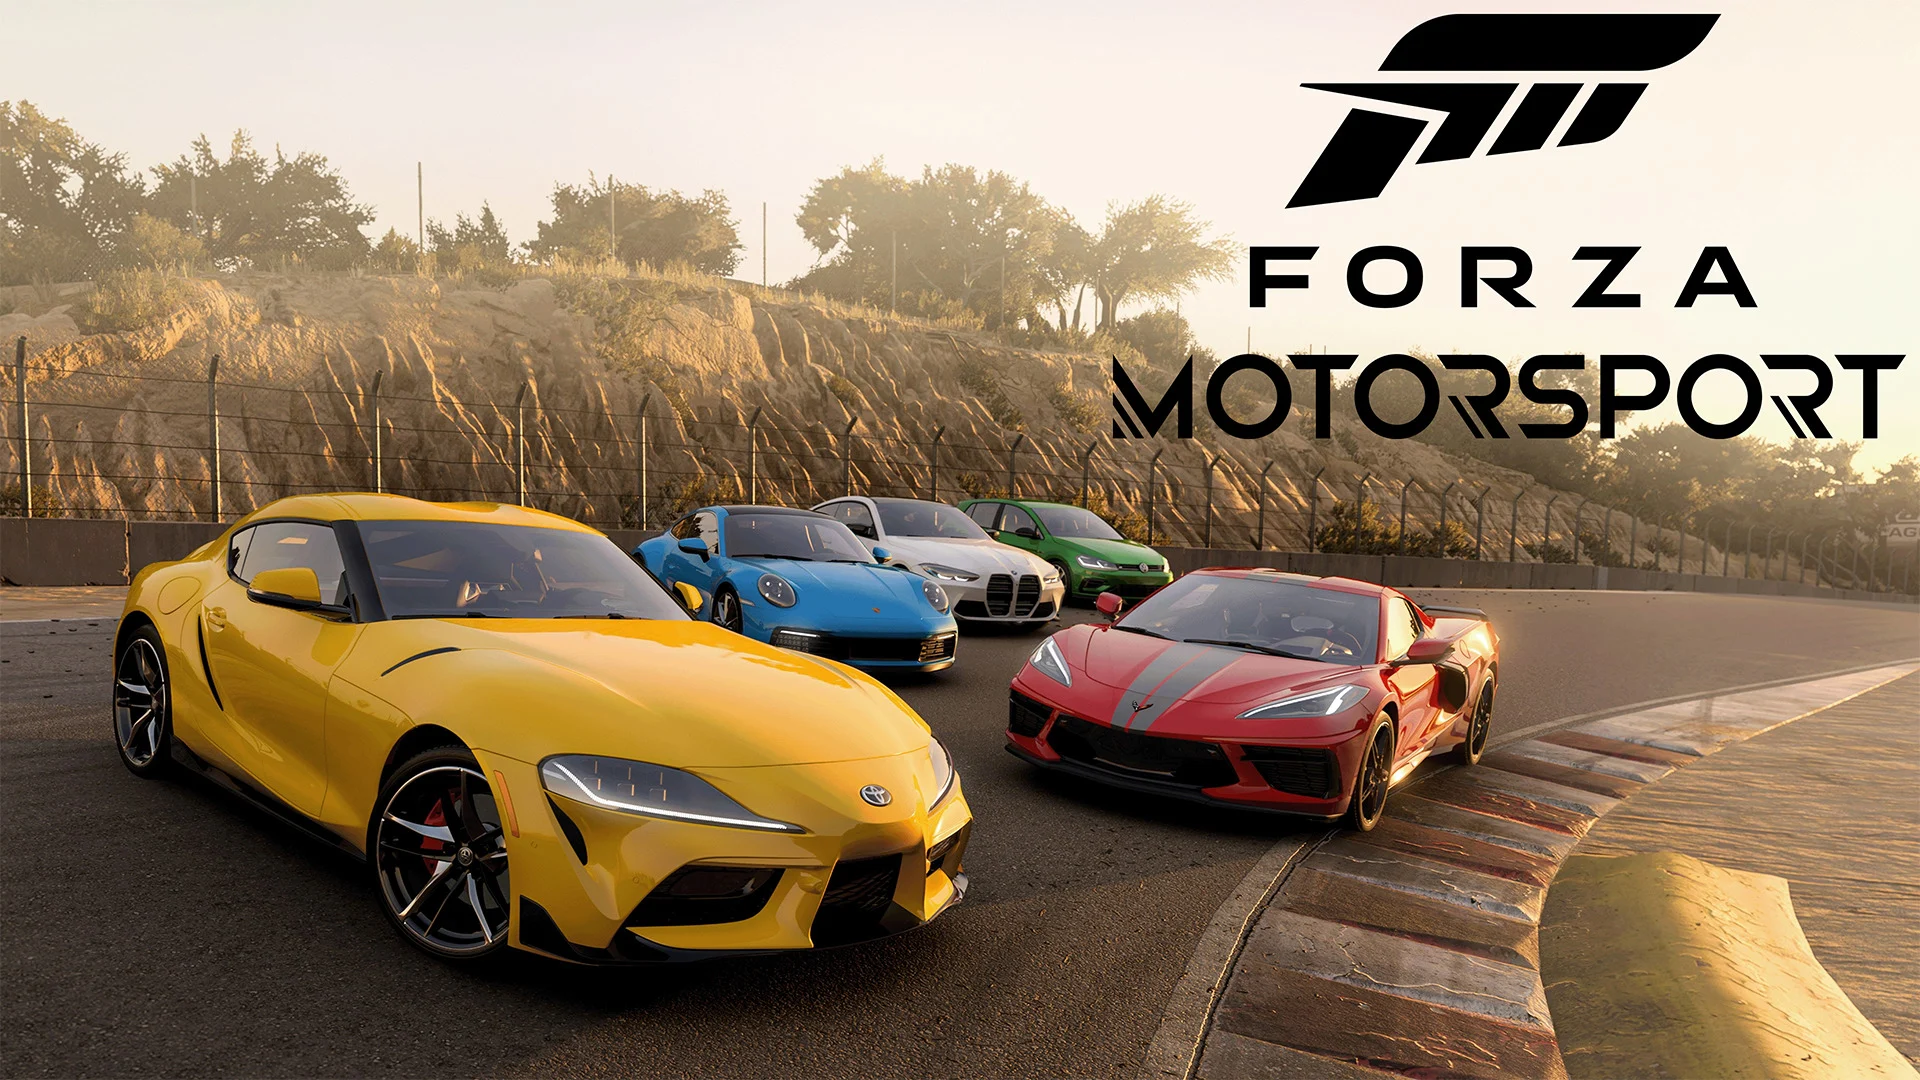 Forza Motorsport uppdatering 1.0 med ett antal buggfixar och förbättringar av spelet